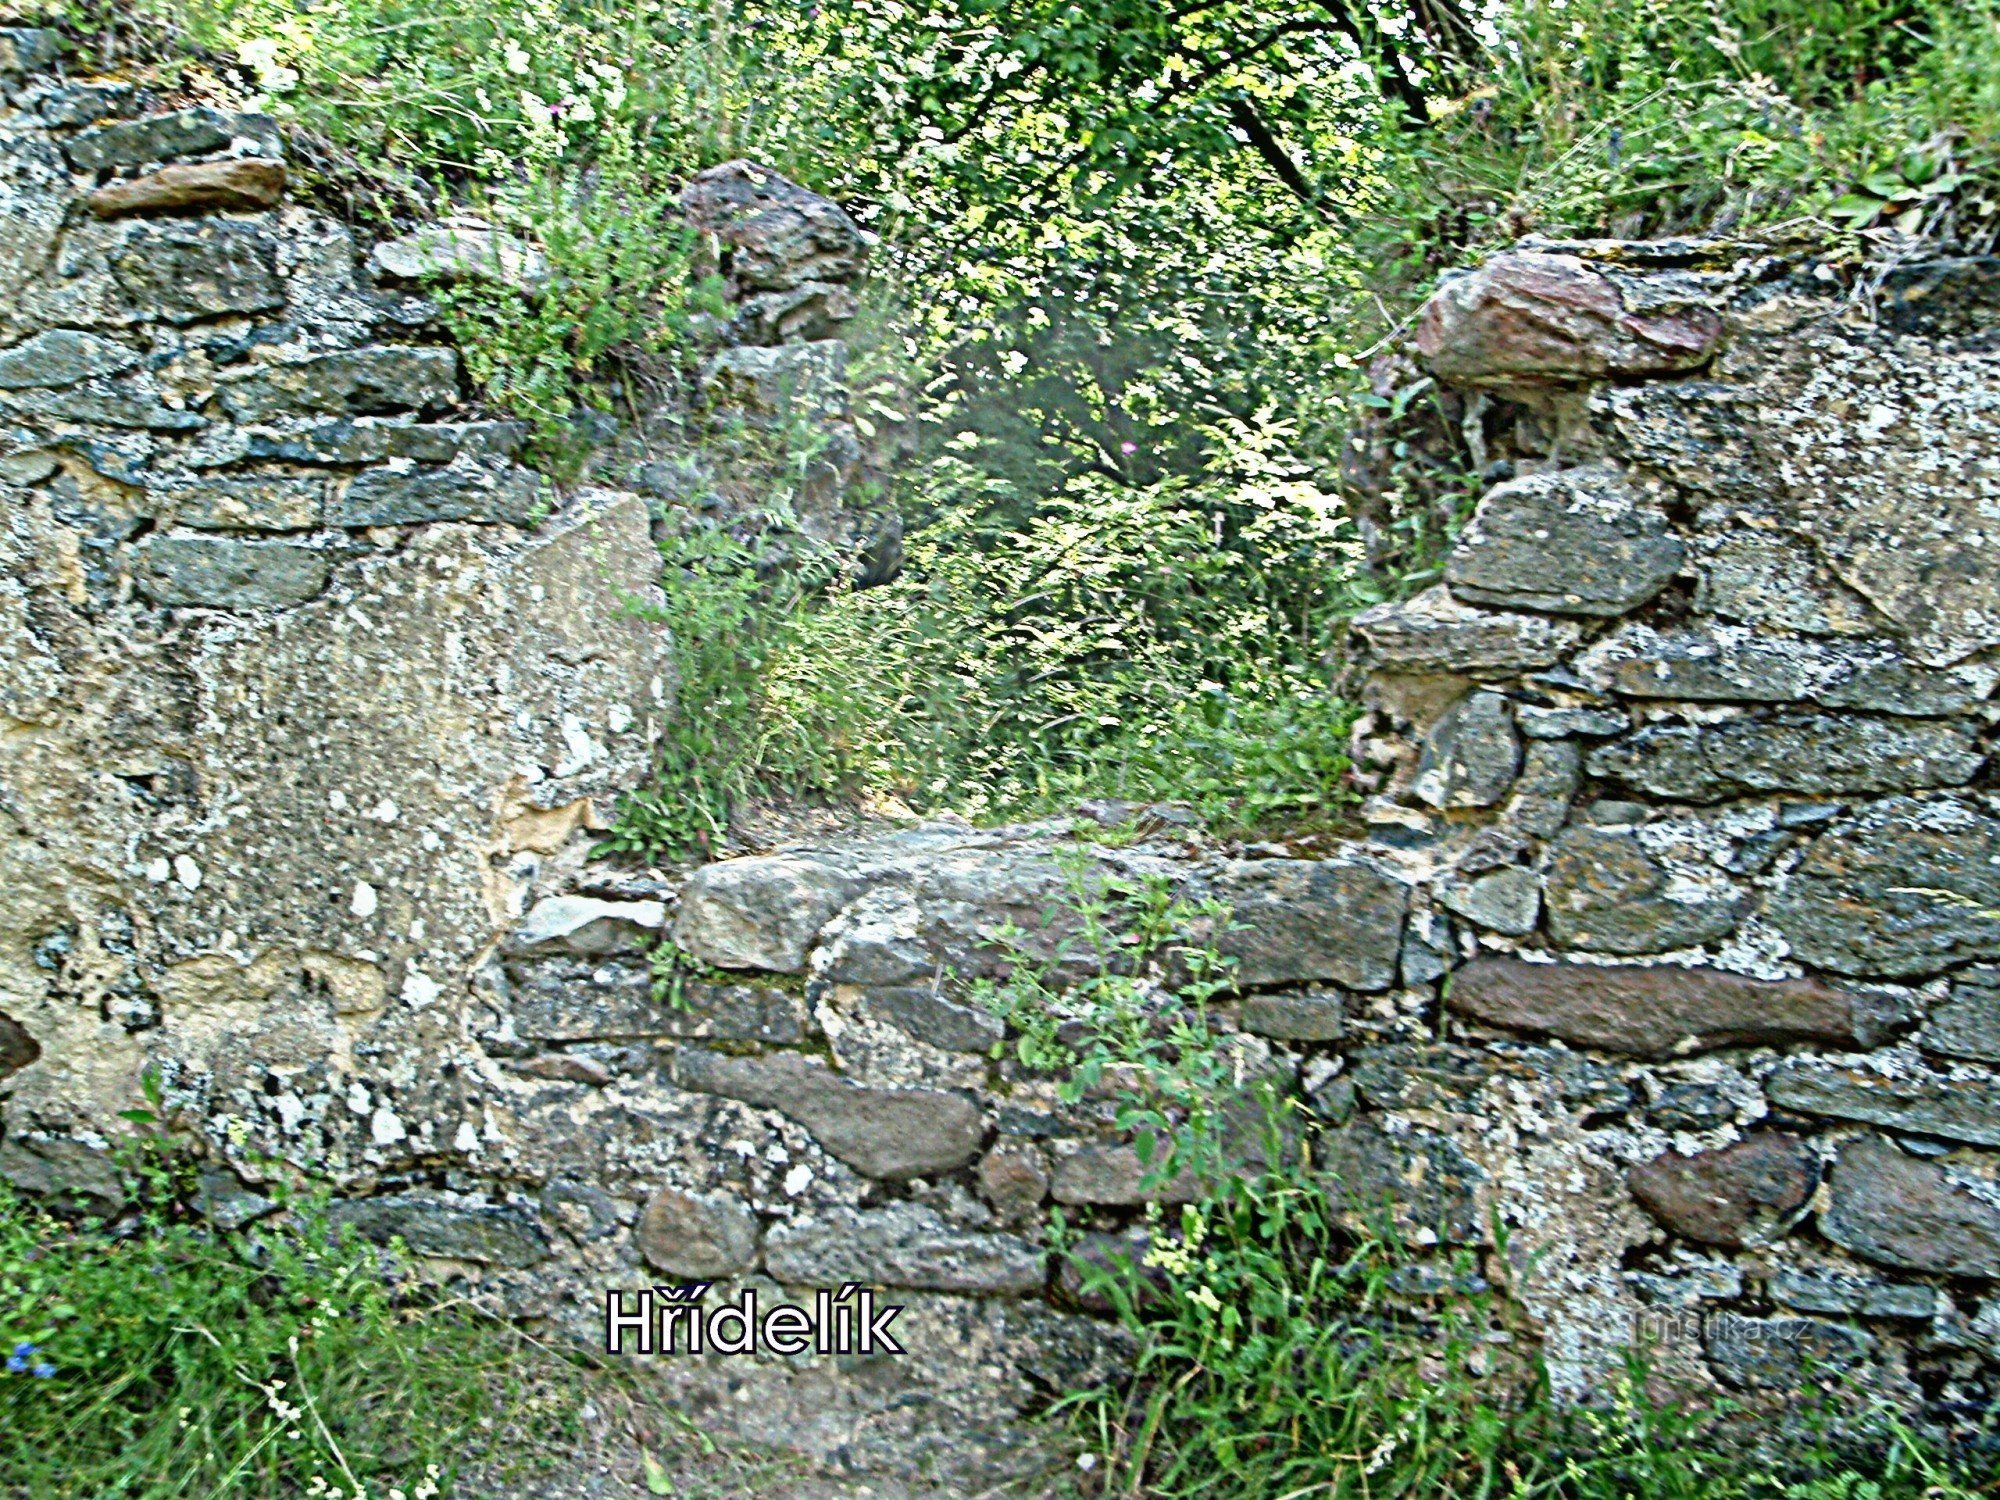 Blíževedly - the ruins of Hřídelík Castle